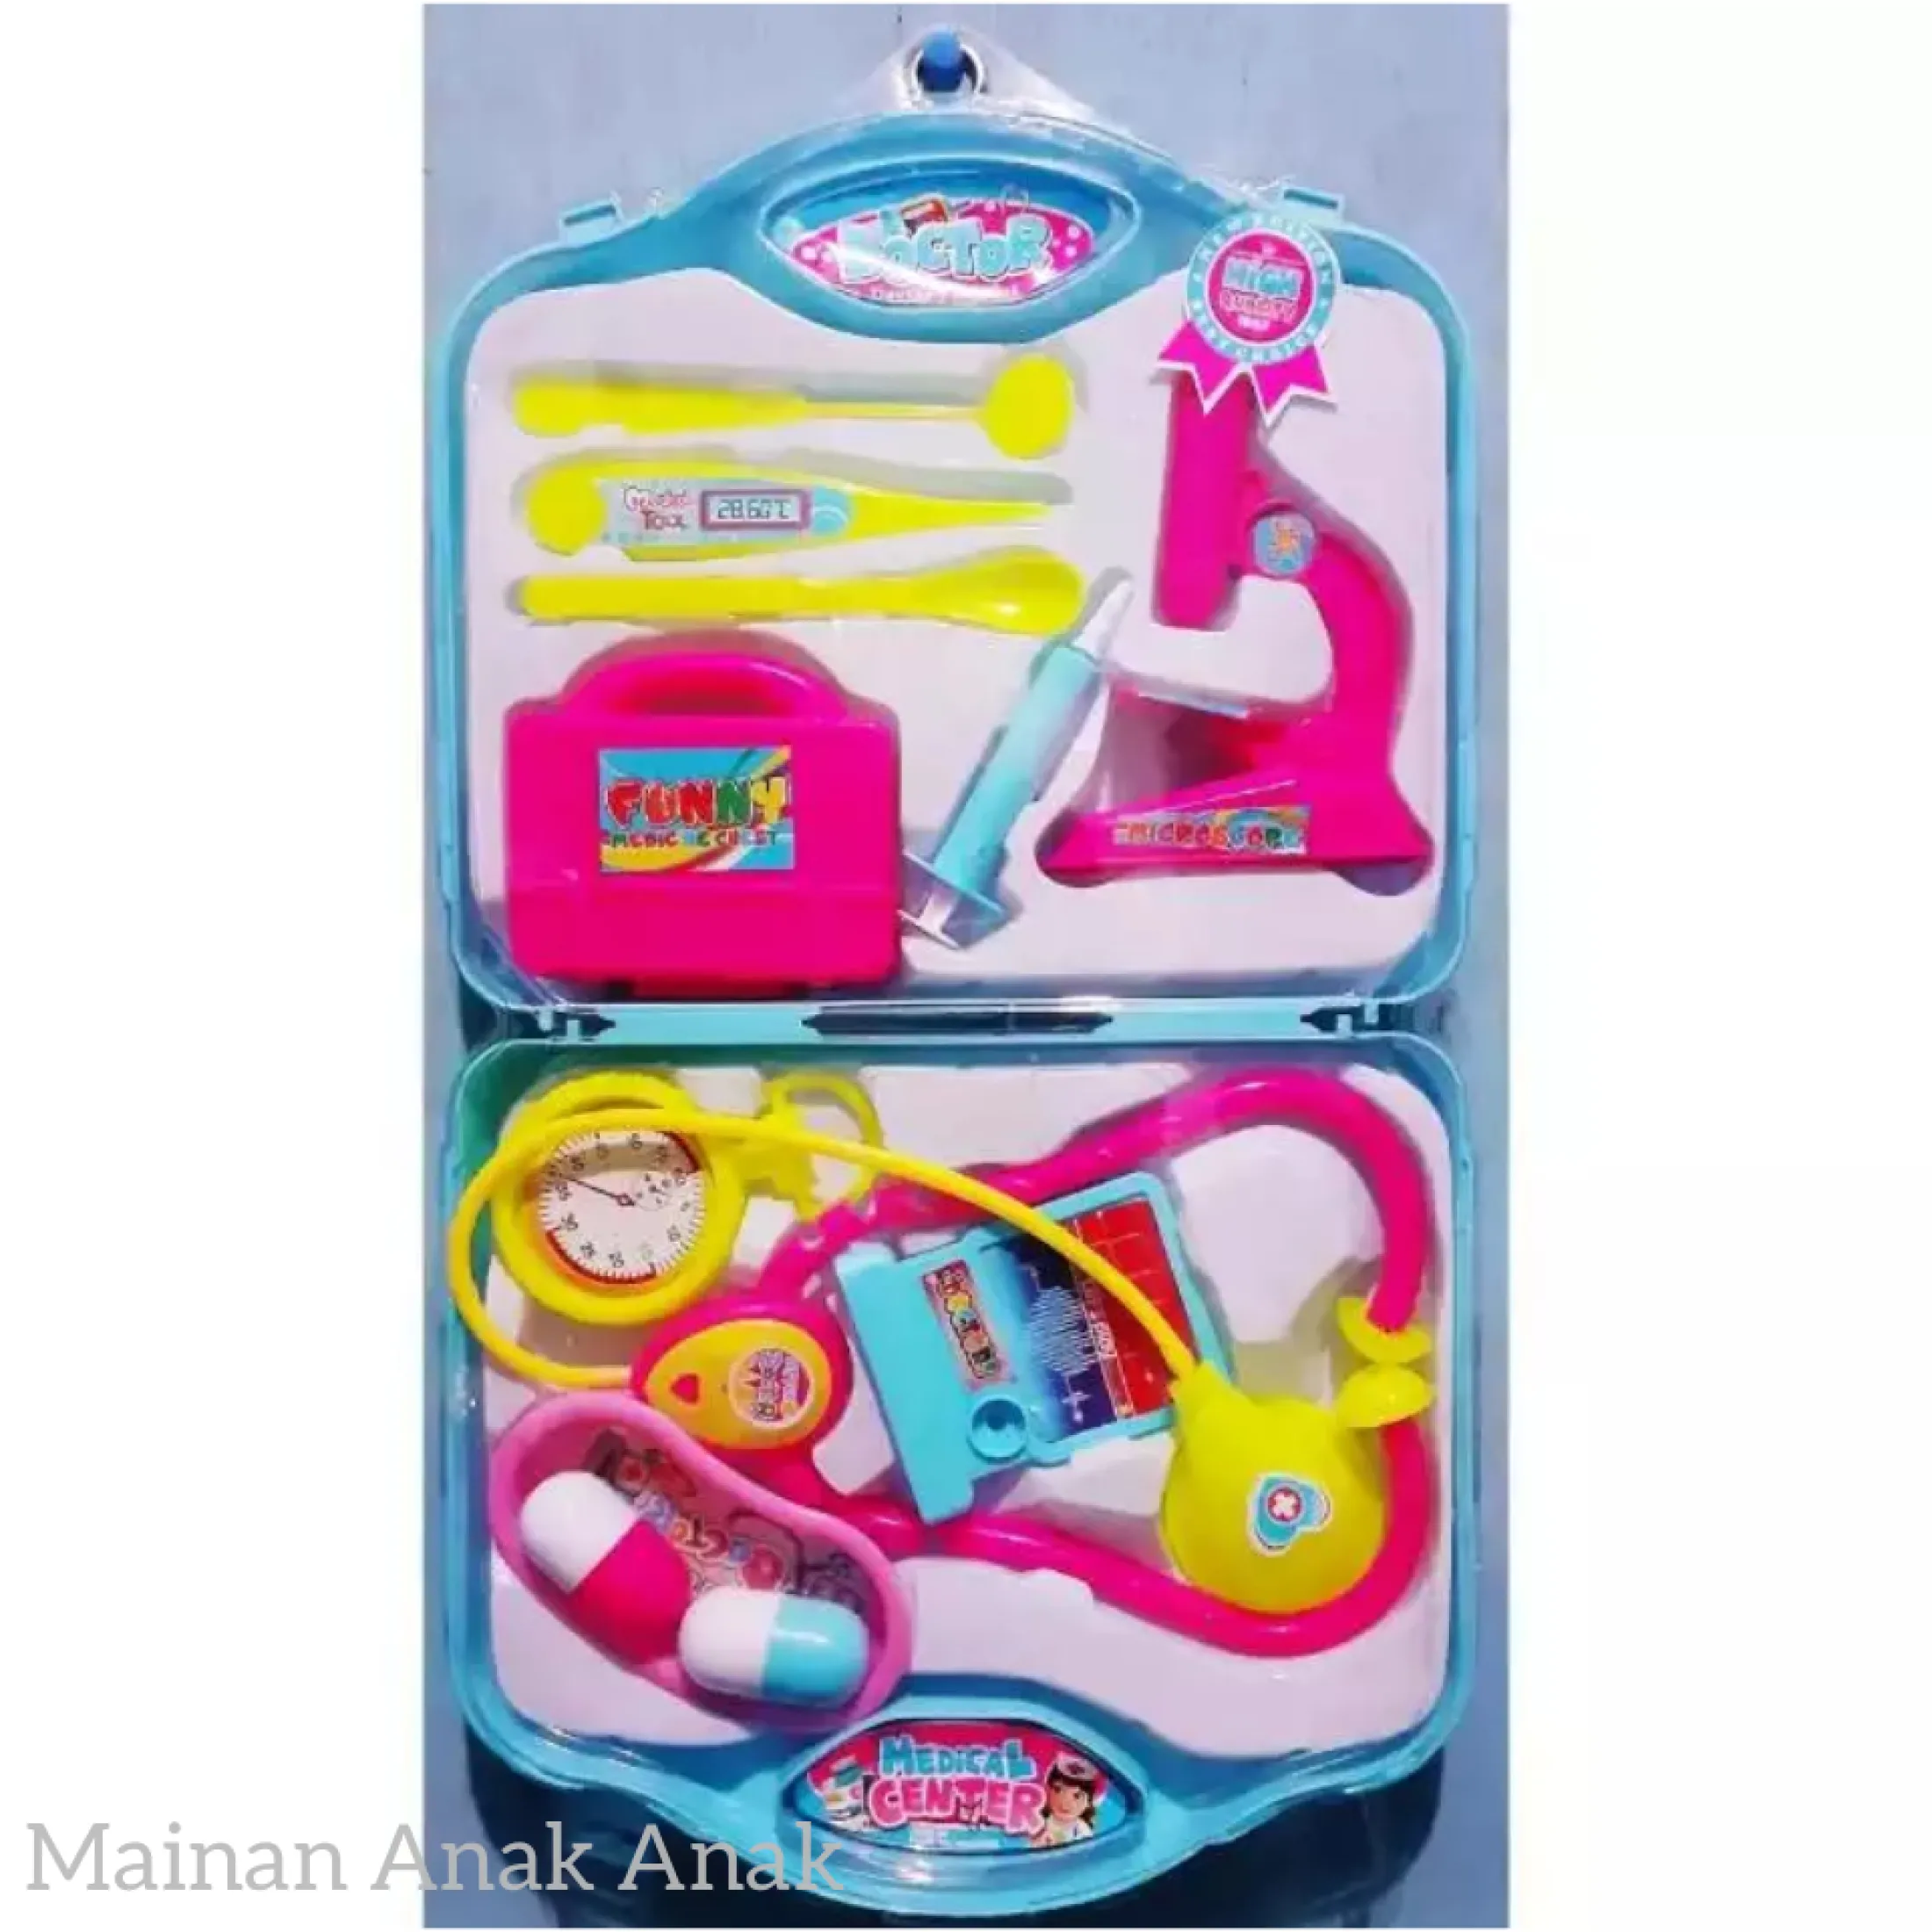 Mainan Dokter Koper Set Terlengkap Mainan Anak Perempuan Dokter Dokteran Koper Mainan Dokter Lengkap Dan Murah Cocok Untuk Hadiah Anak Lazada Indonesia